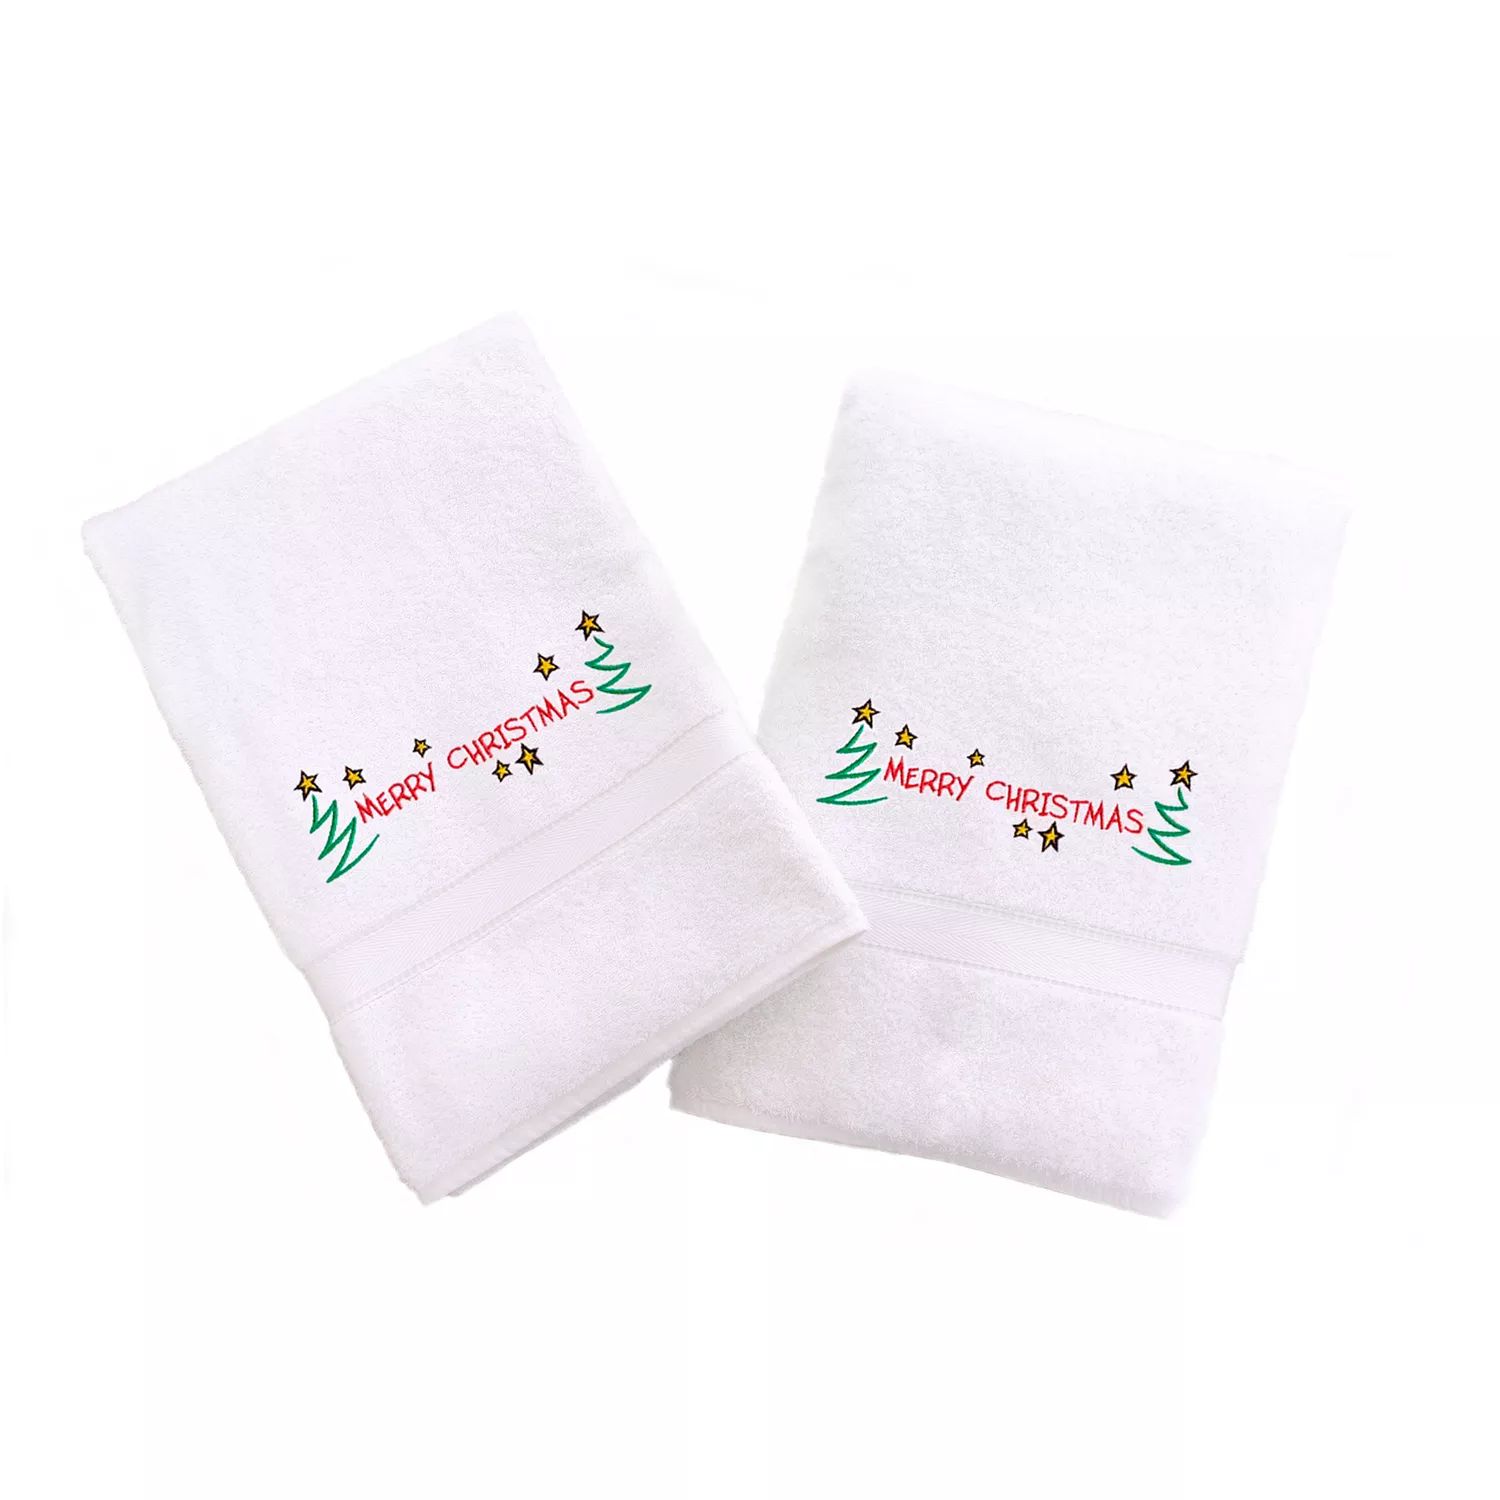 Linum Home Textiles Праздничные полотенца для рук с вышивкой бордюром, 2 упаковки printio шоколадка 3 5×3 5 см merry christmas